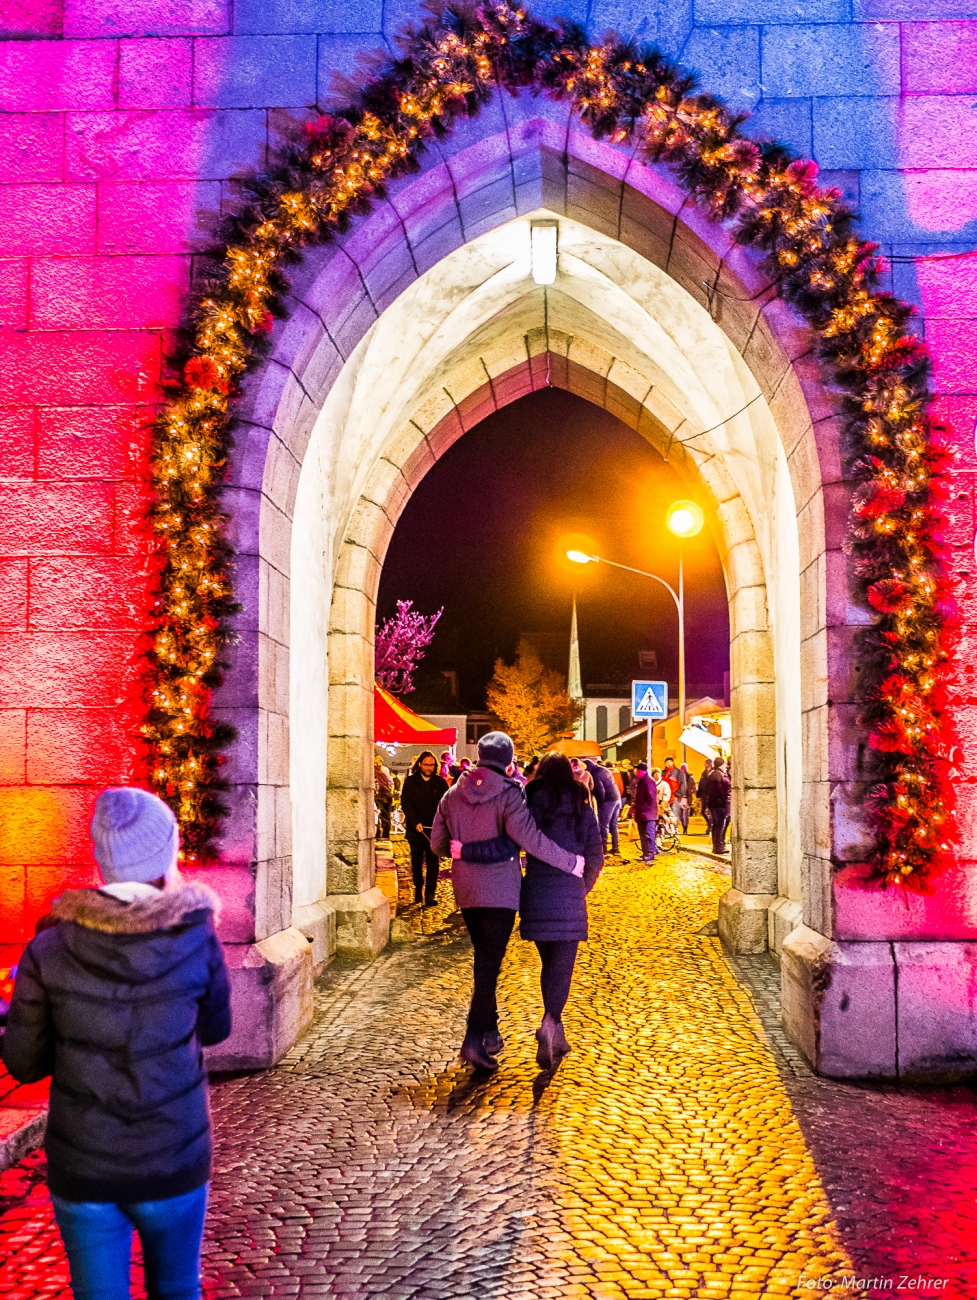 Foto: Martin Zehrer - Durch den bunt beleuchteten kemnather Kirchturm durch. Kemnather candlelight-shopping am 8. Dezember 2018... 